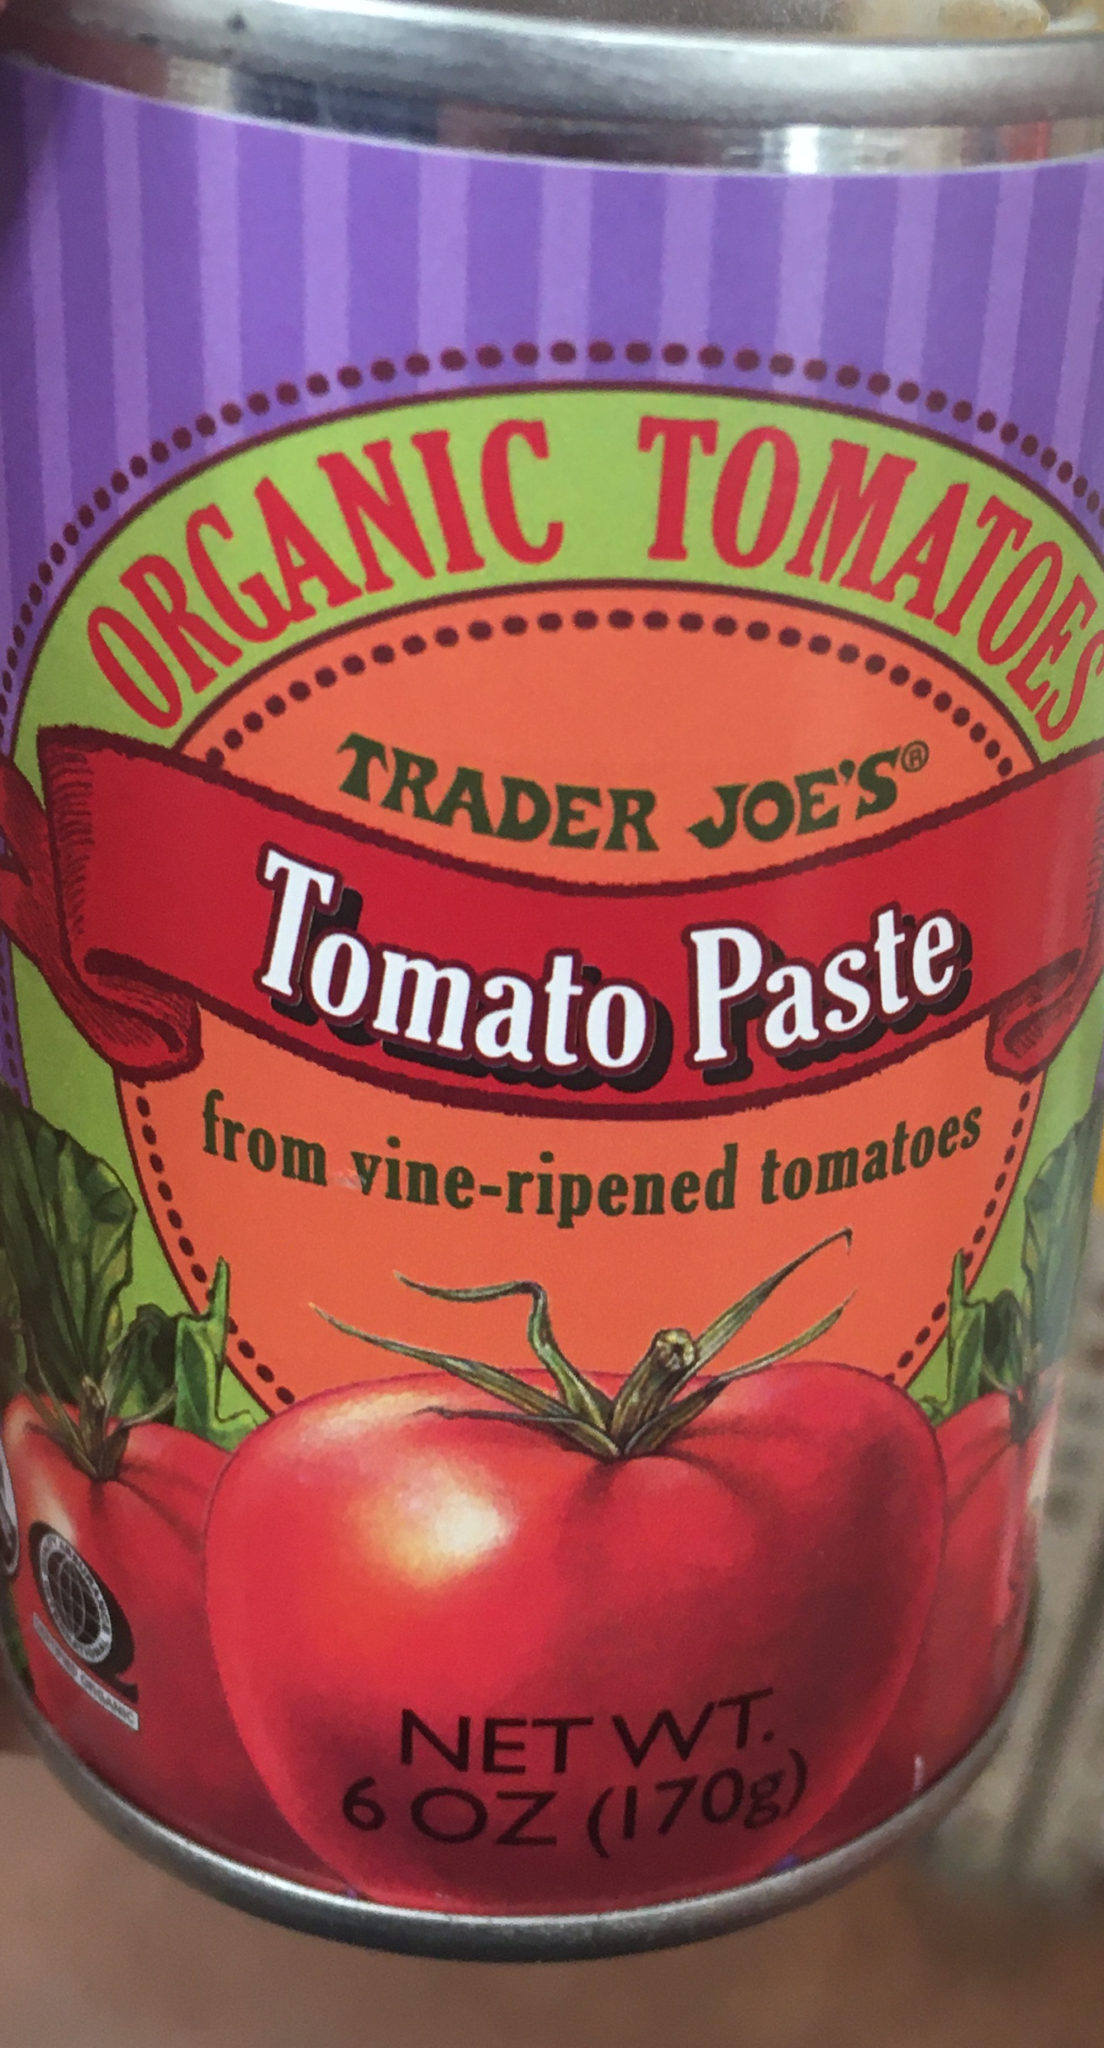 Trader Joe's Tomato Paste, Organic Tomatoes - Trader Joe's Reviews